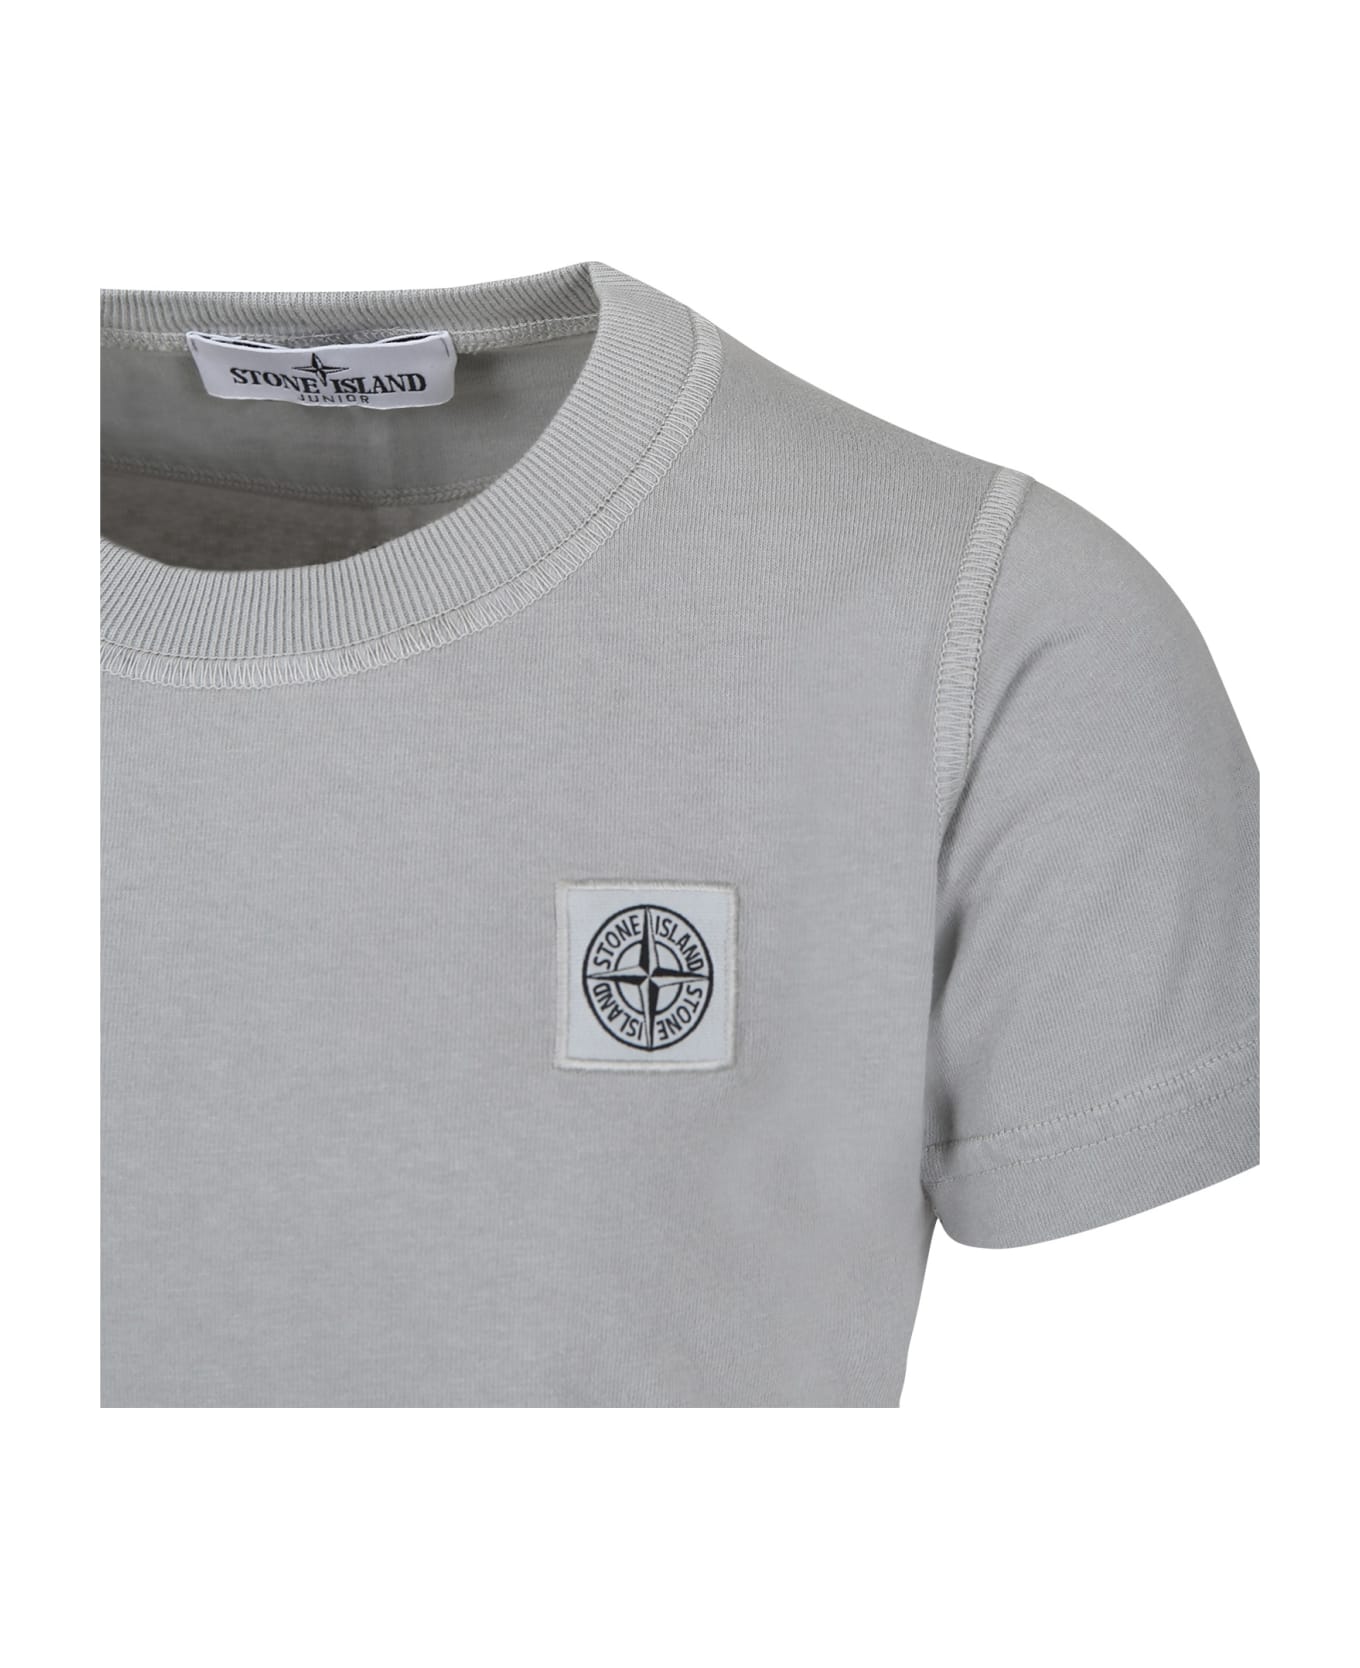 Stone Island Junior Grey T-shirt For Boy With Logo - Grey